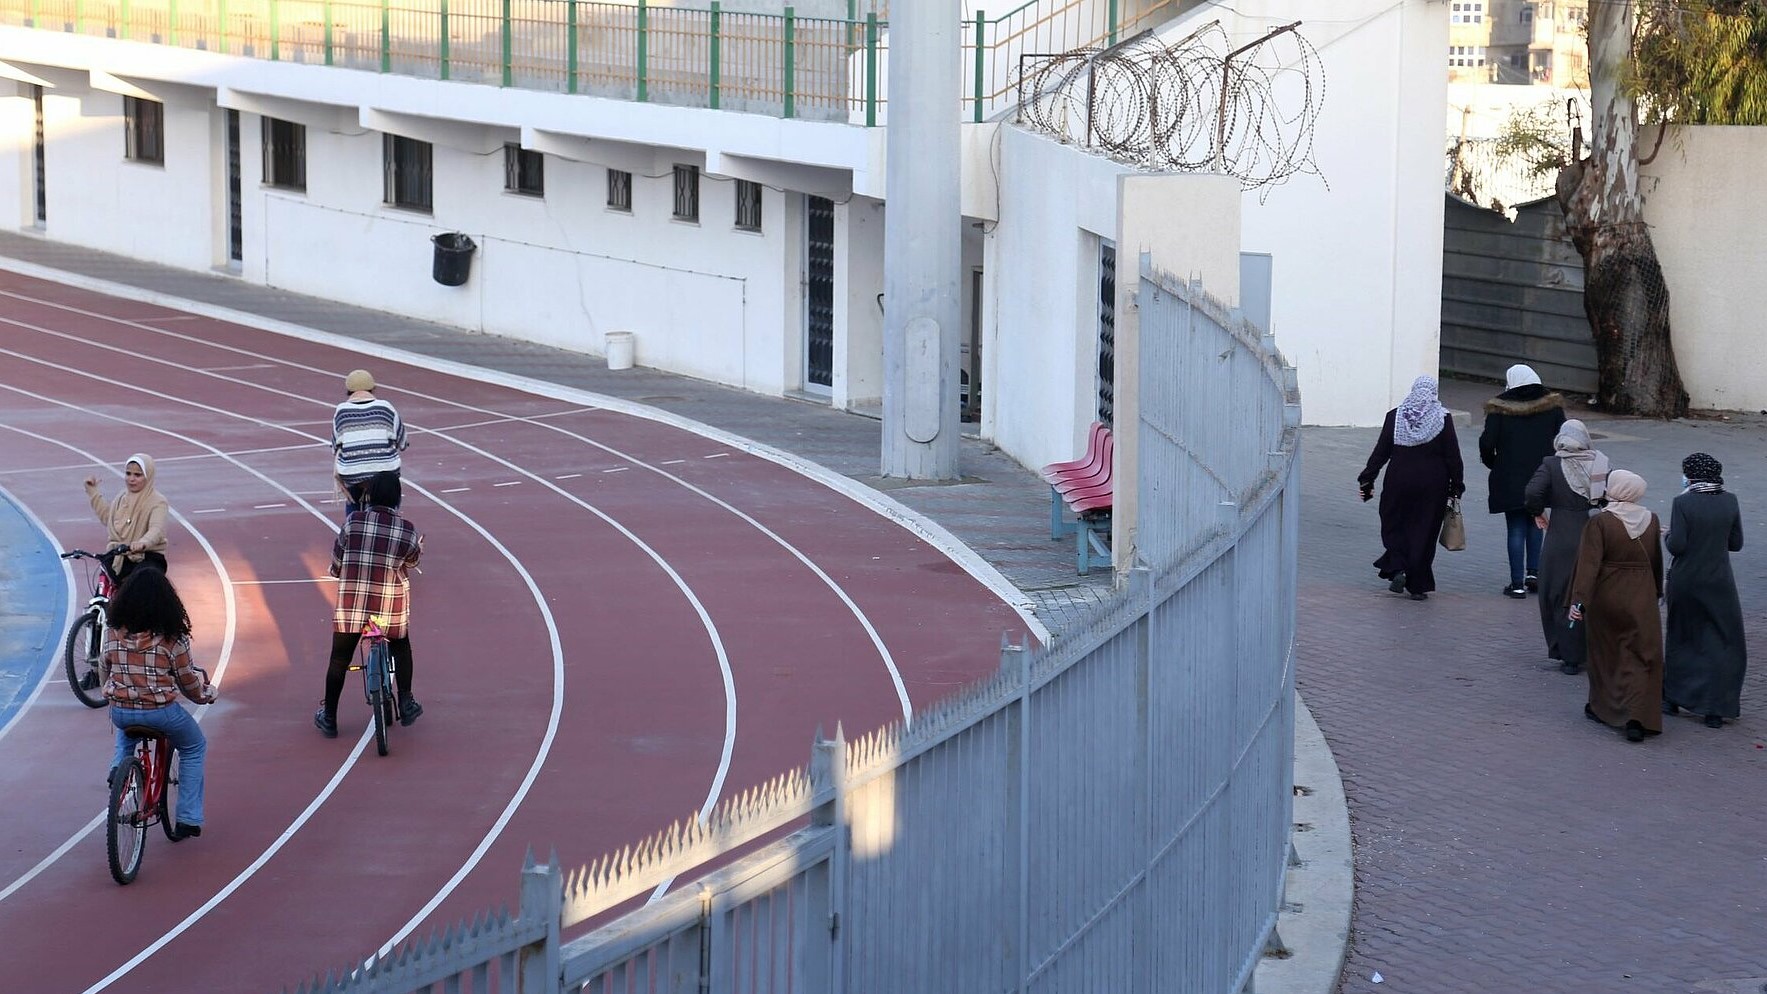 Frauen sollen nicht in der Öffentlichkeit Fahradfahren. Deshalb hat Rania einen eigenen Ort für sie geschaffen in einem Stadion (Foto: Samar Abou Elouf)